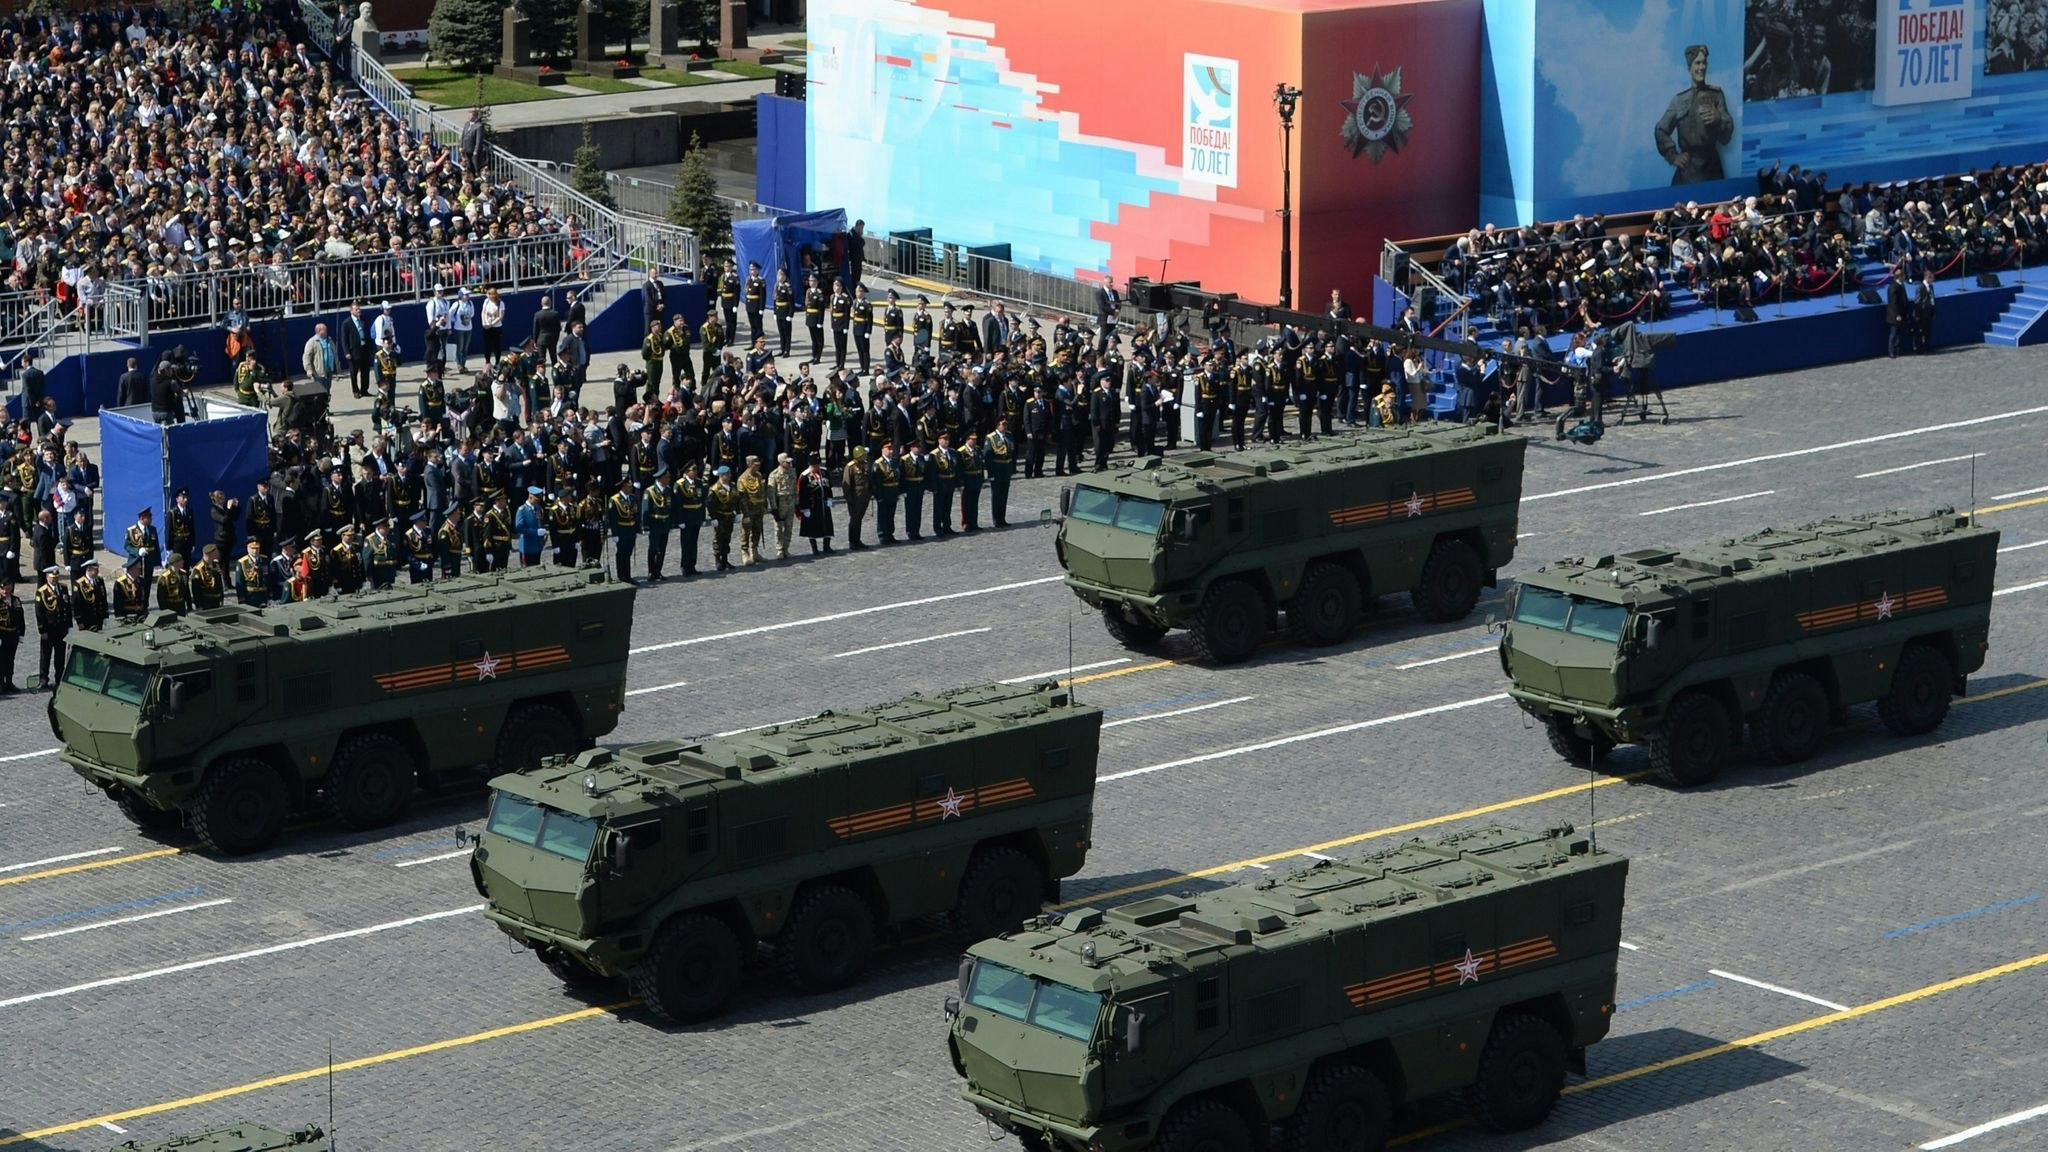 russischer angriffskrieg: parade ohne sieg - putin rüstet sich für langen krieg